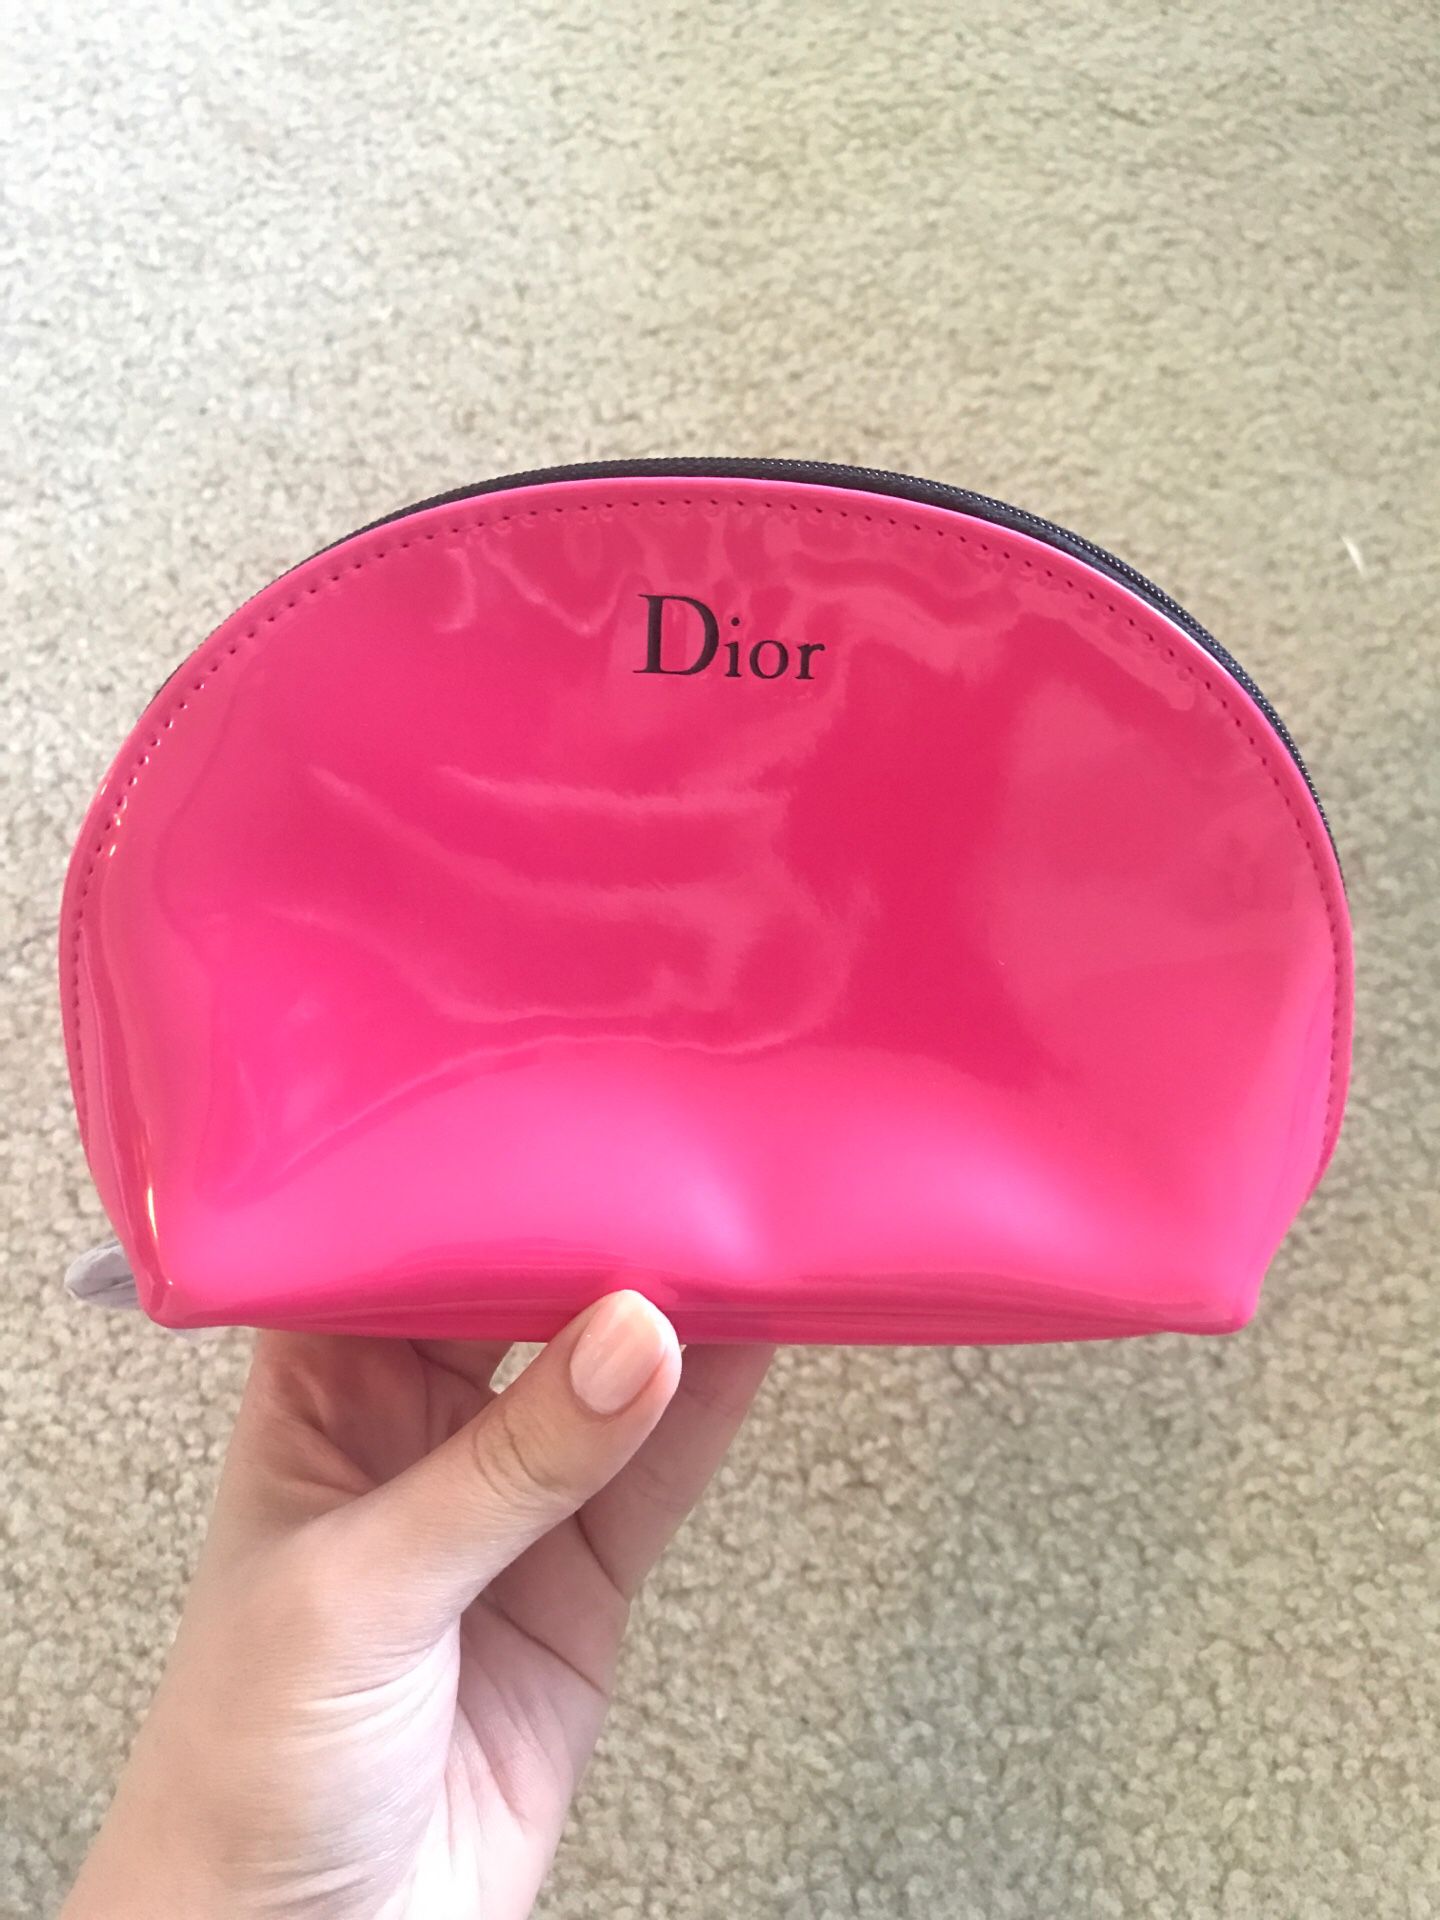 Dior makeup bag